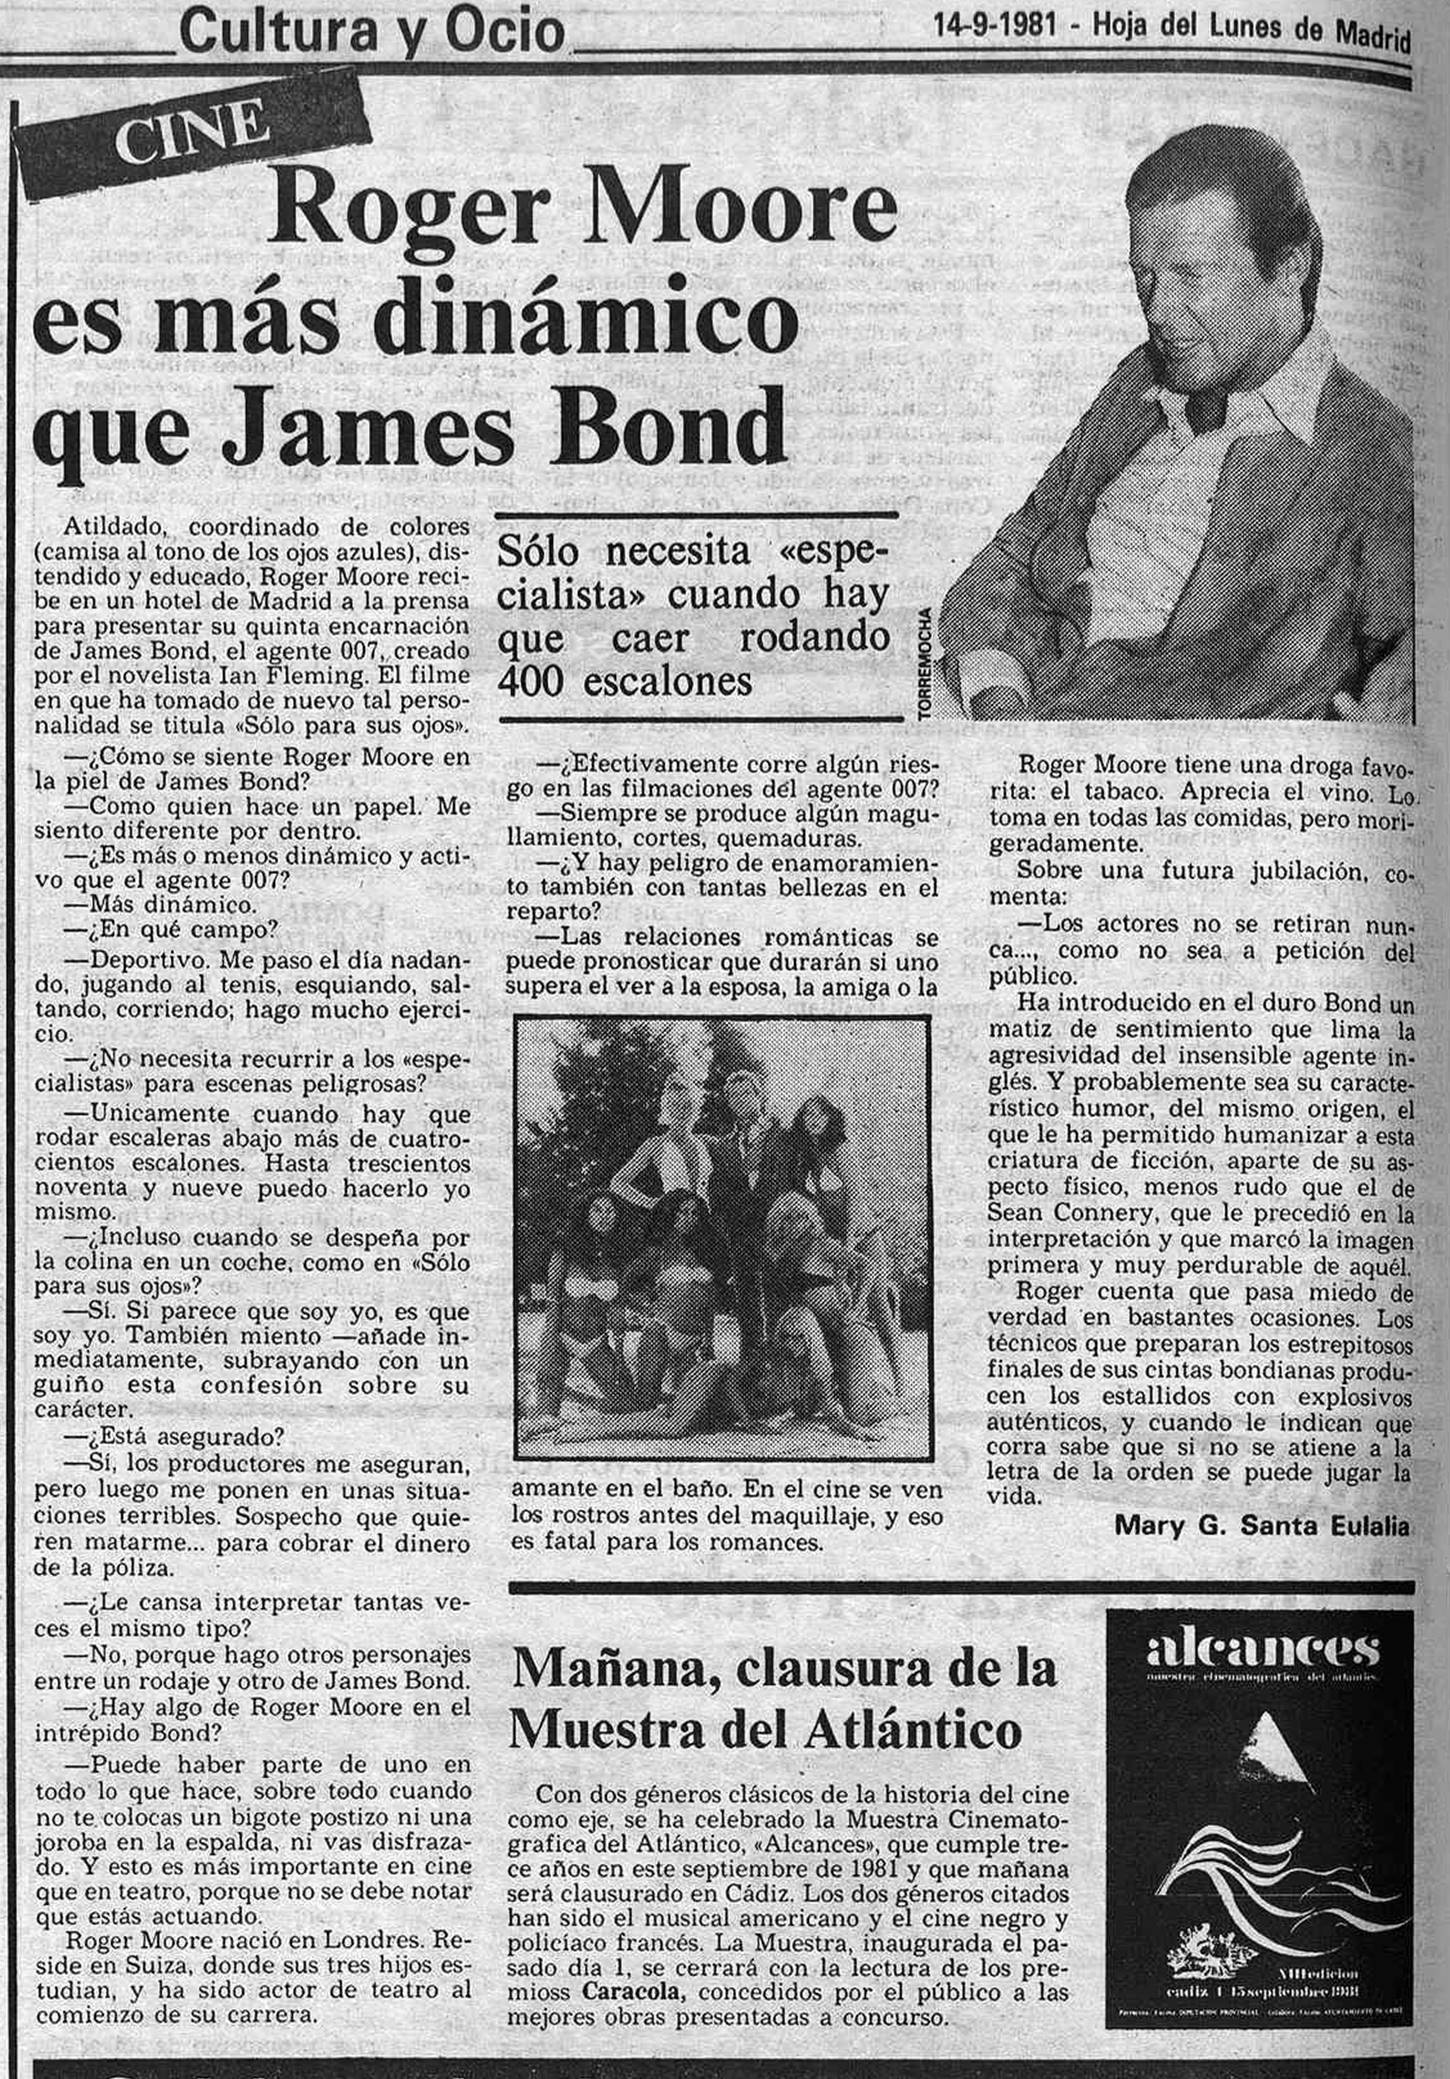 12 1981 09 14 Hoja del Lunes de Madrid Dinamico